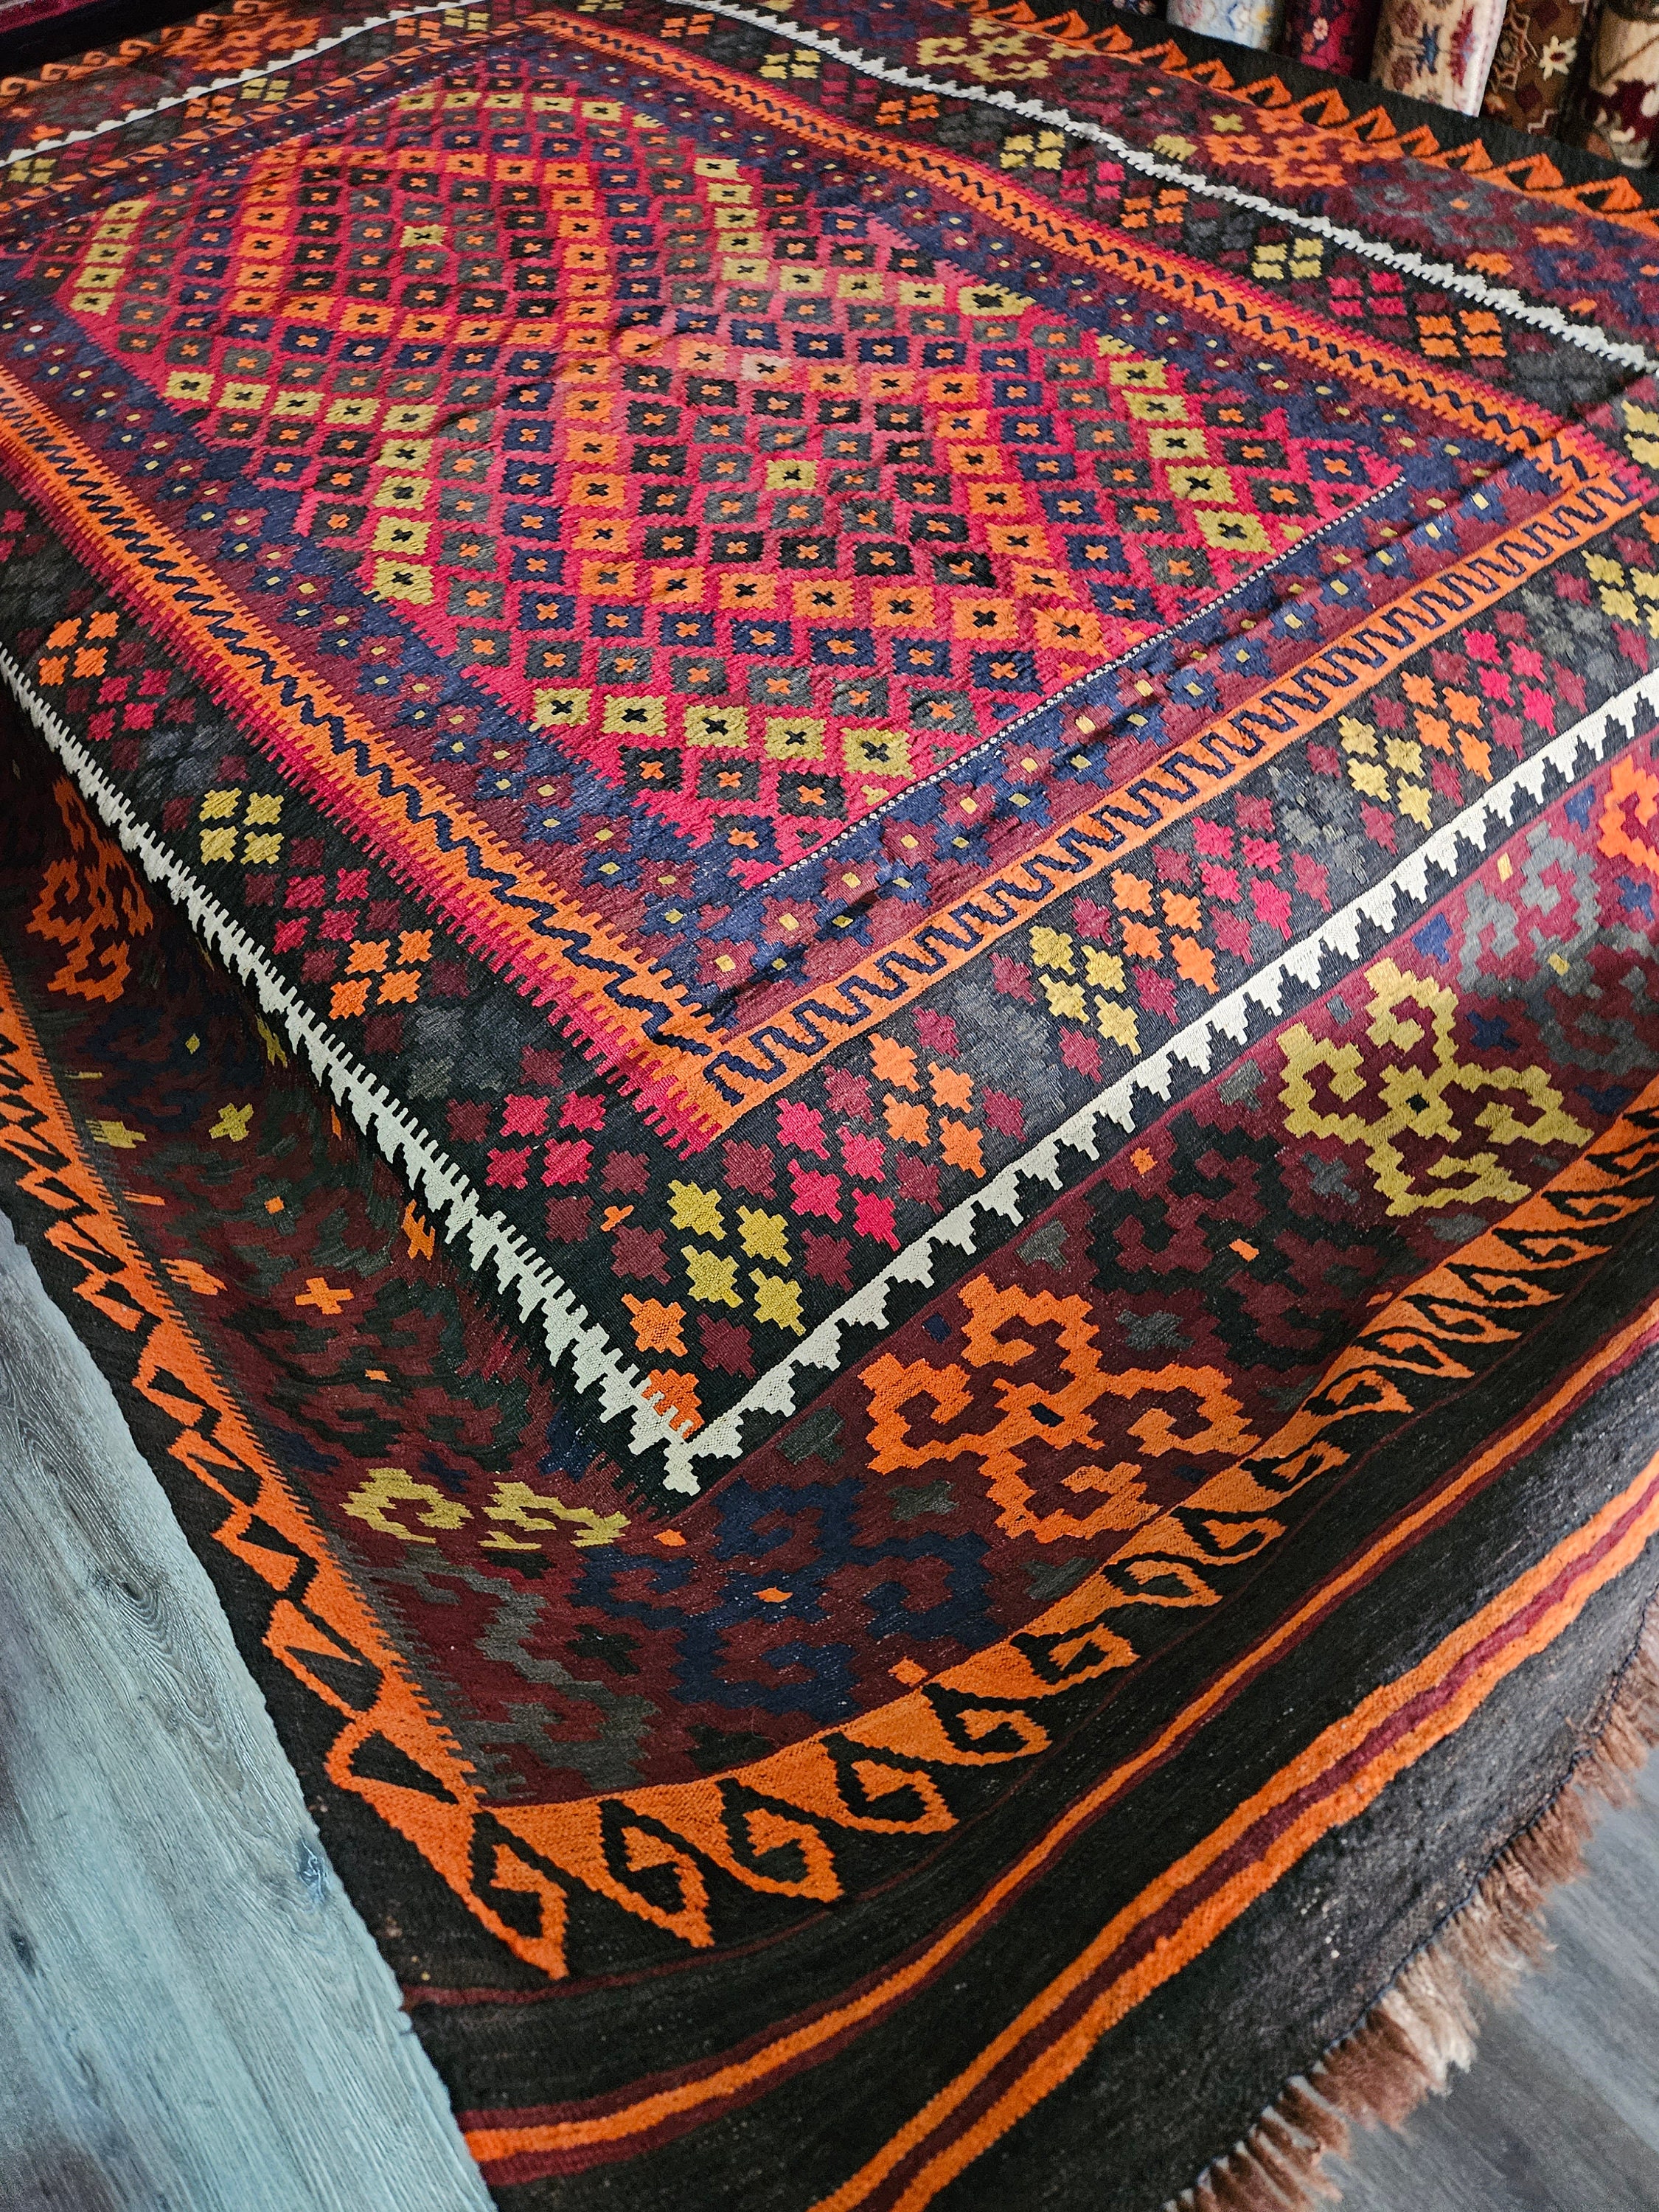 8X12 kilim rug, Orange Handmade kilimrug, sheepskin rug, persian rug, hand made rug, afghan kilimrug, flat voven rug Geometric Afghan kilim